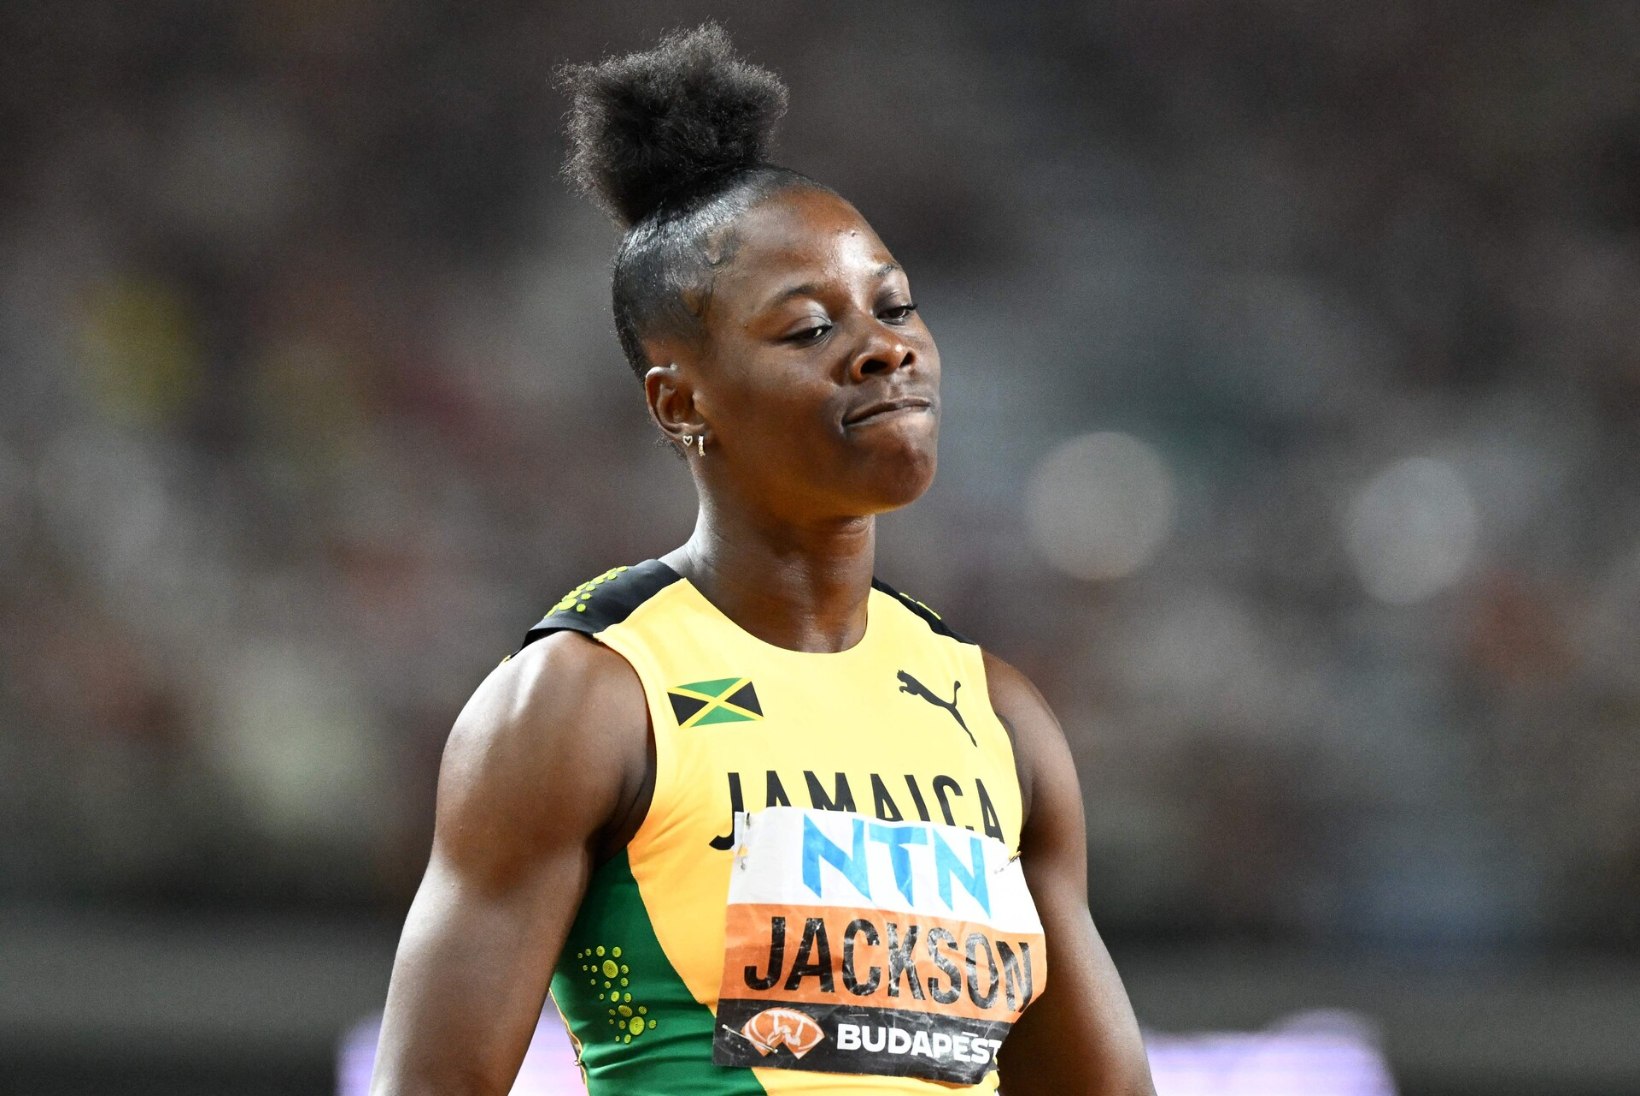 Kas Jamaica sprinteril õnnestub hooaja viimasel võistlusel purustada maailma üks vanim maailmarekord?